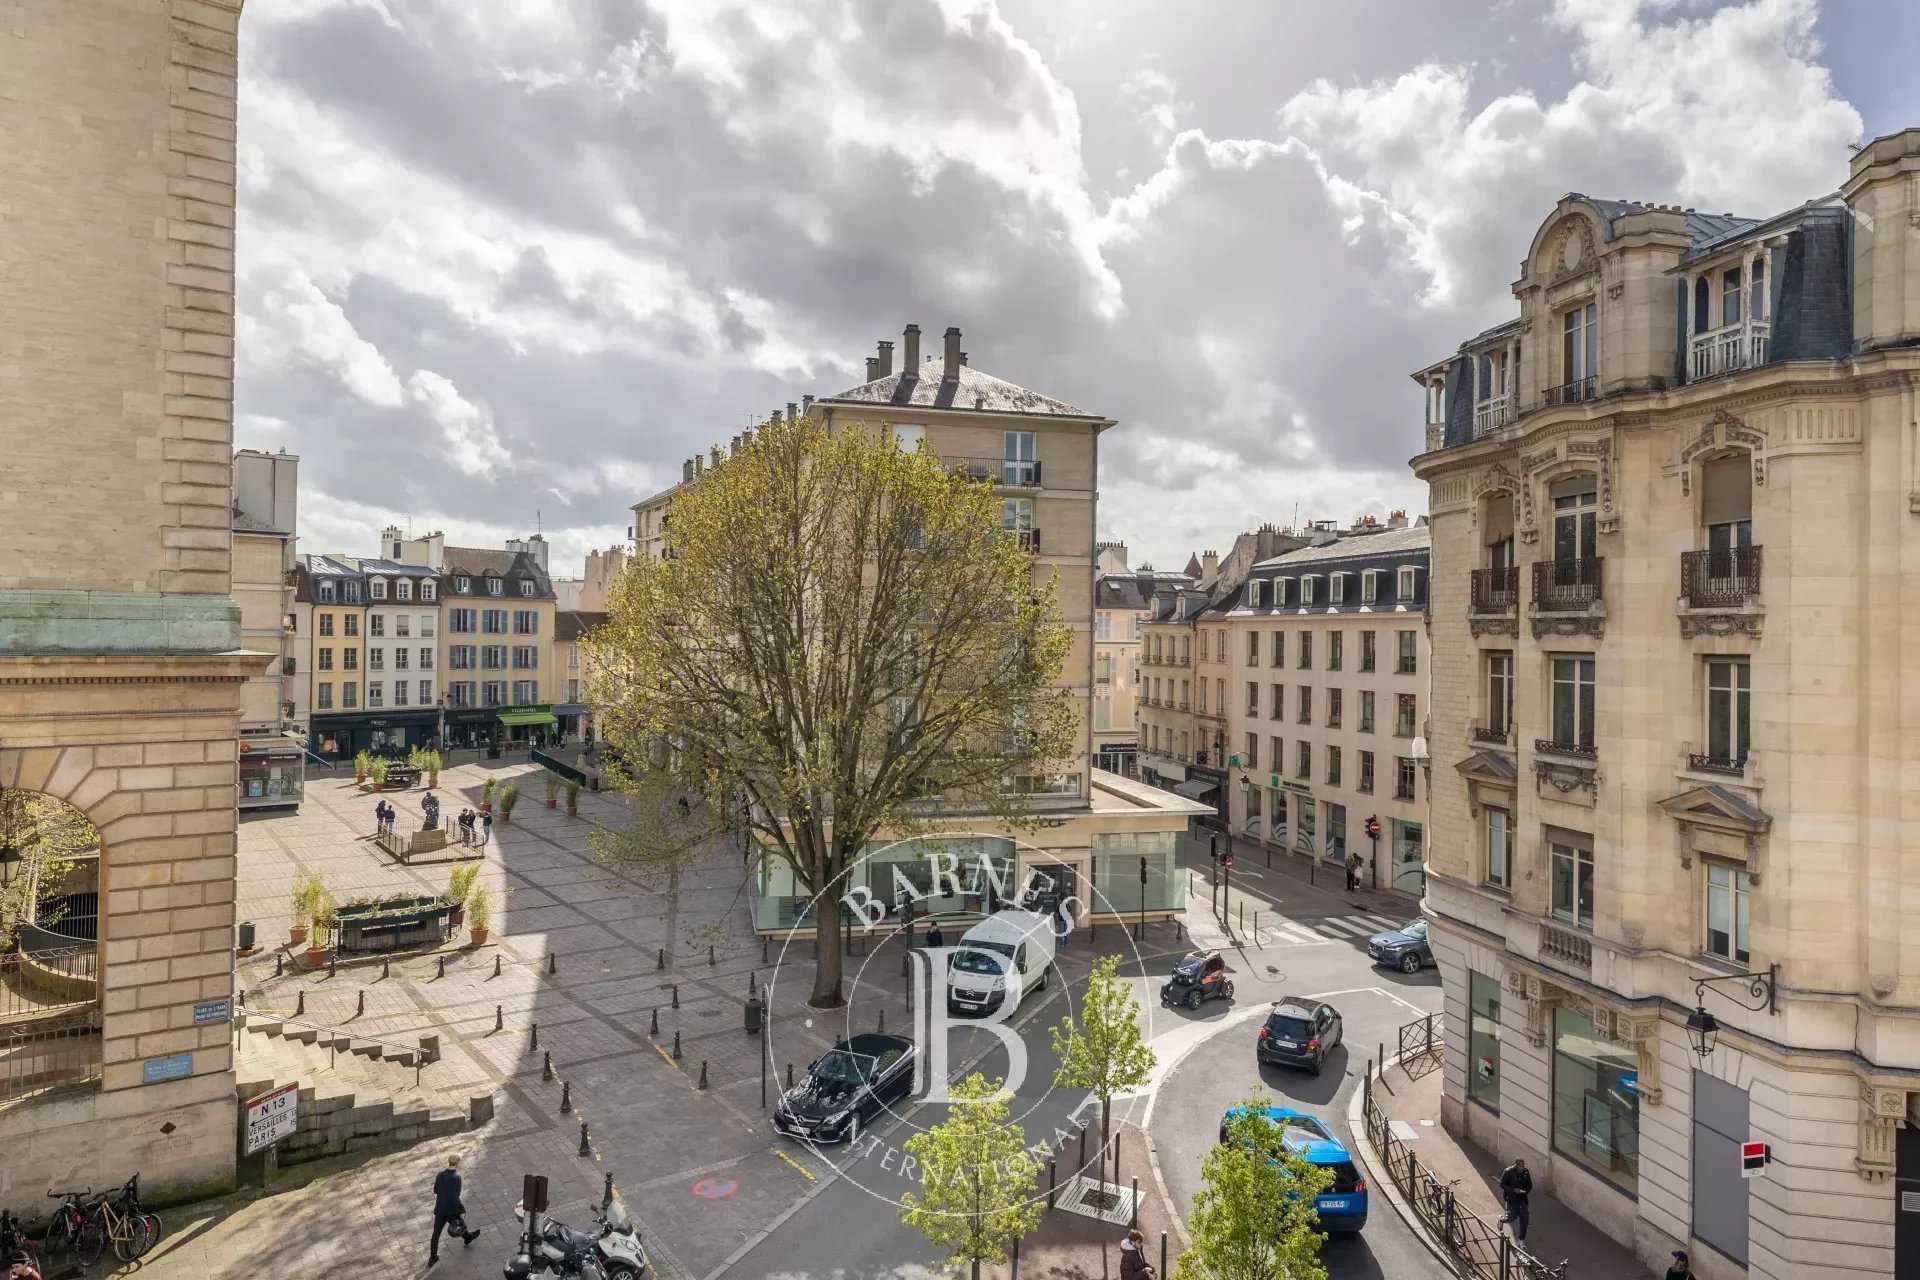 Saint-Germain-en-Laye  - Appartement 6 Pièces 4 Chambres